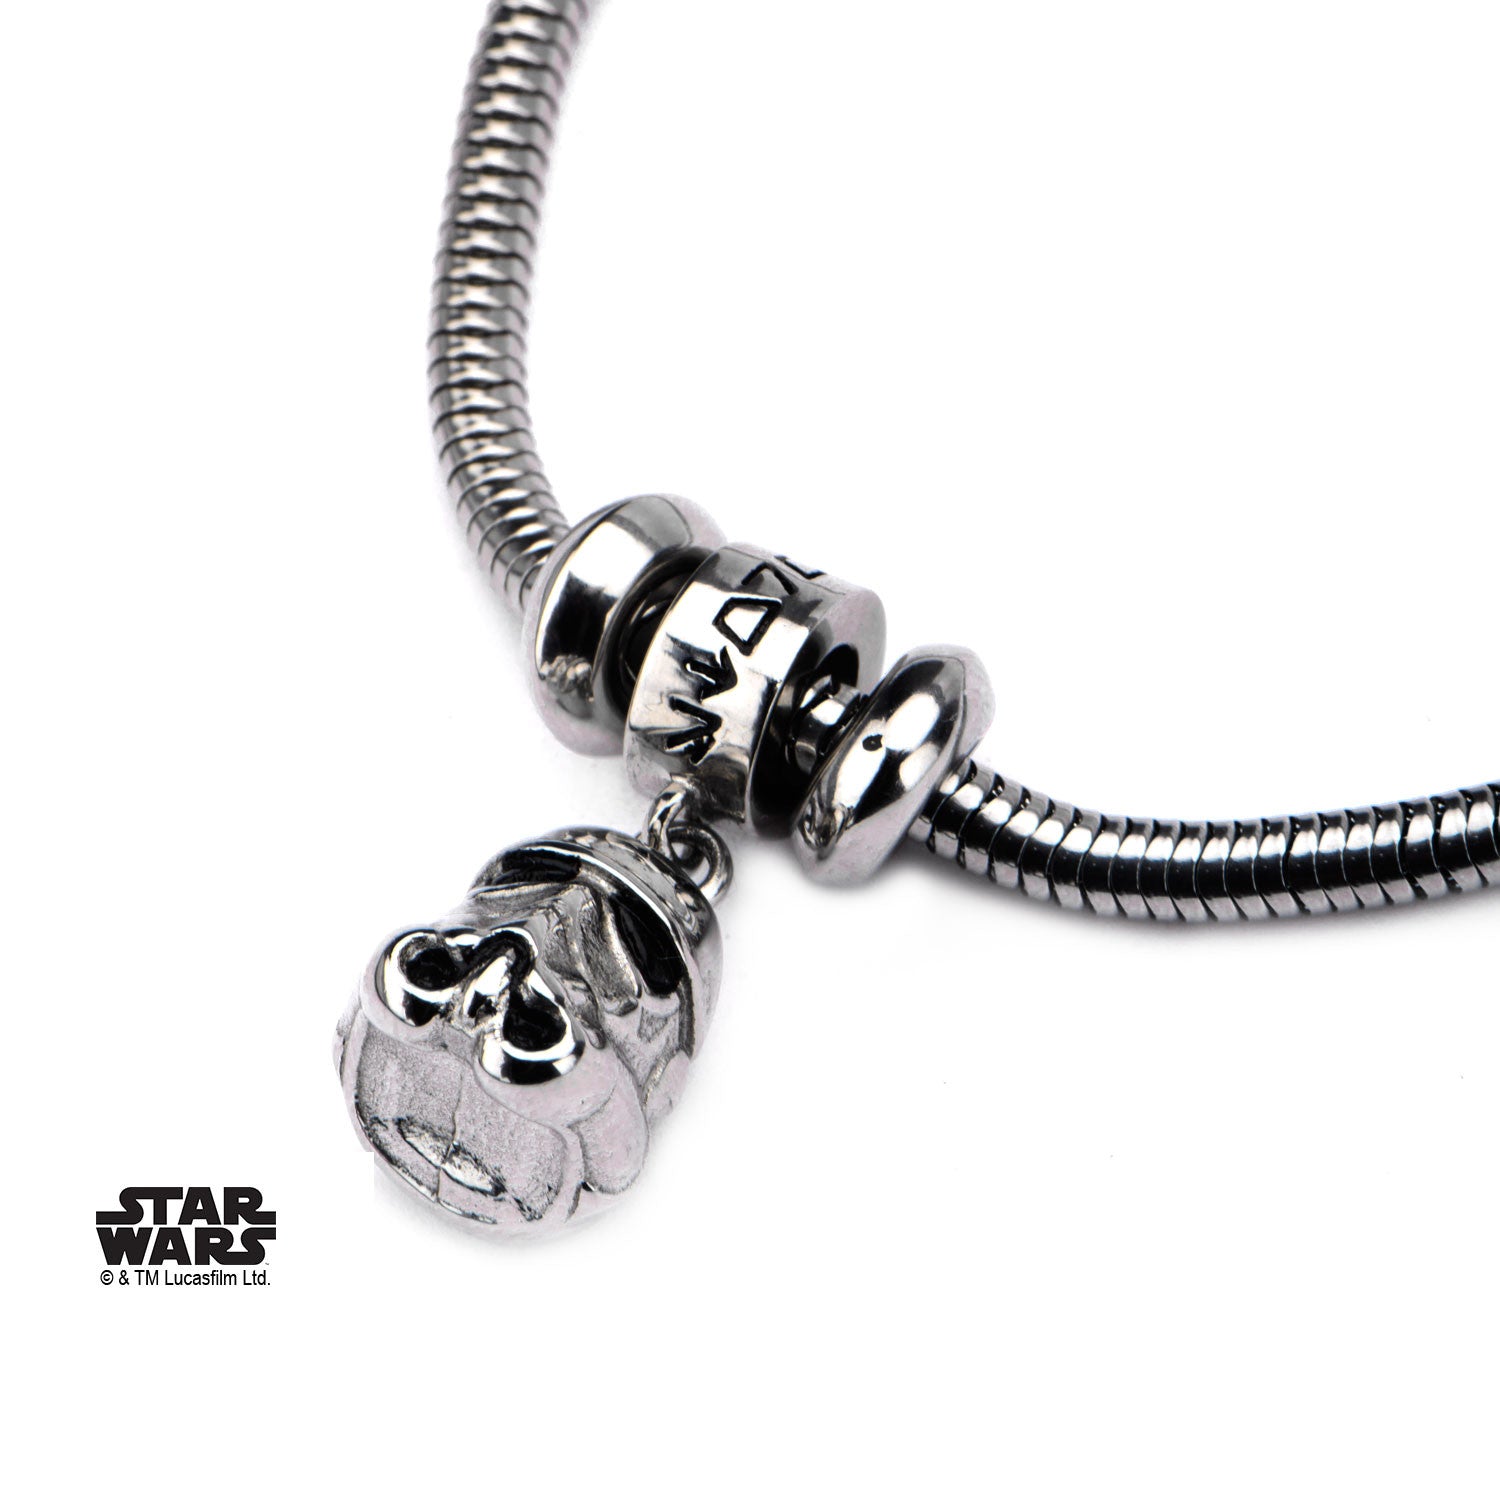 Star Wars Storm Trooper Symbol Bracelet